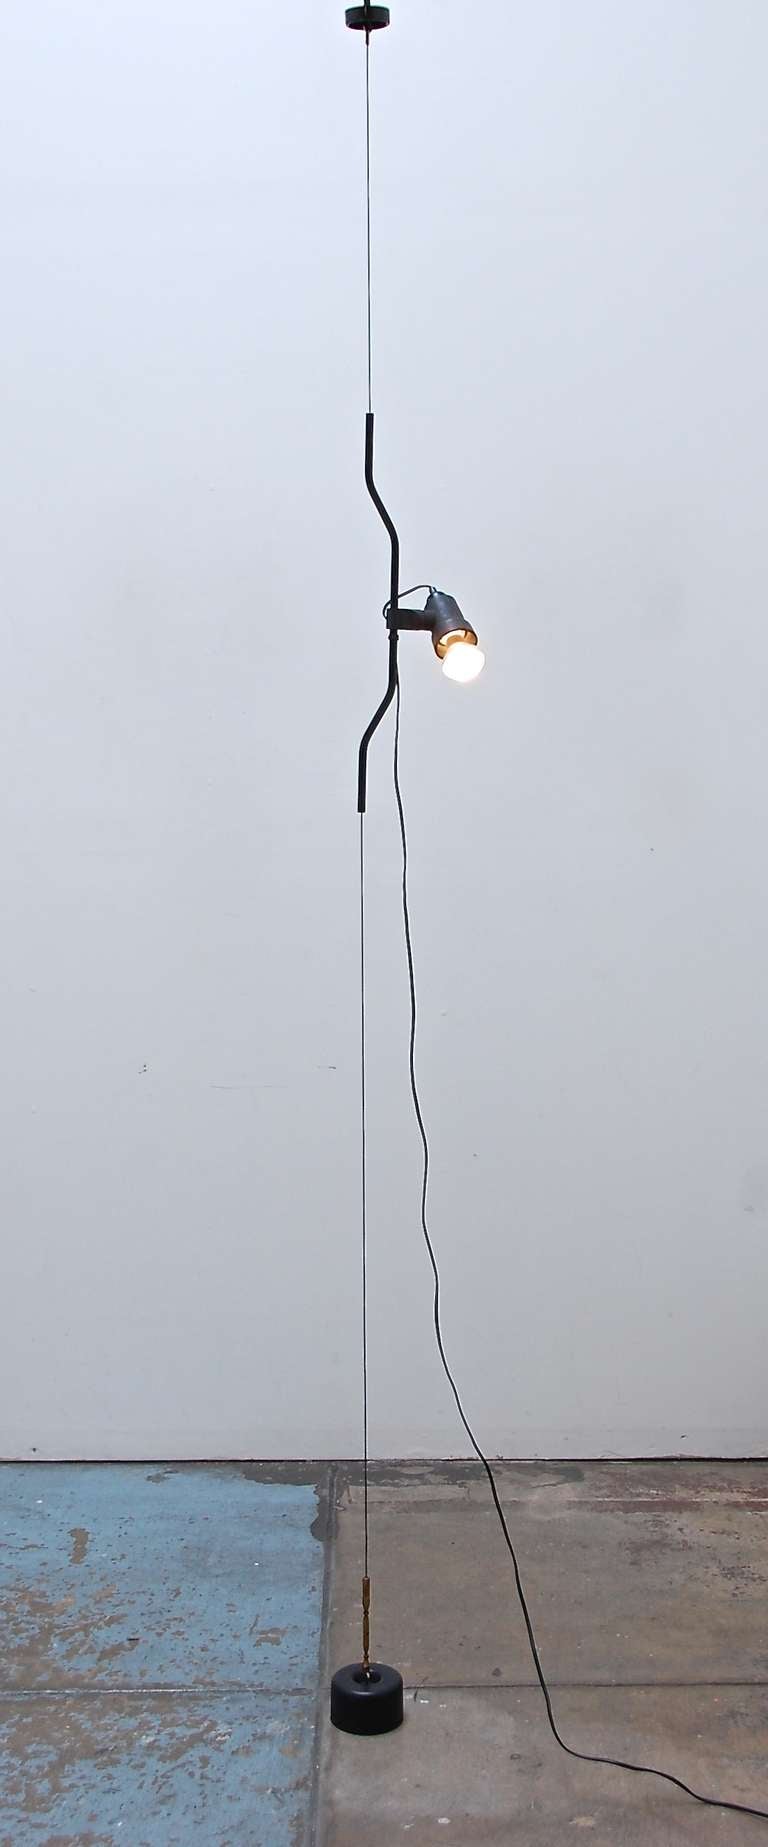 Achille Castiglioni & Pio Manzu designed “Parentesi” ceiling to floor suspension lamp for Flos from Italy. This unique fixture is part of the permanent collection at MOMA. The directional light swivels and is height adjustable.